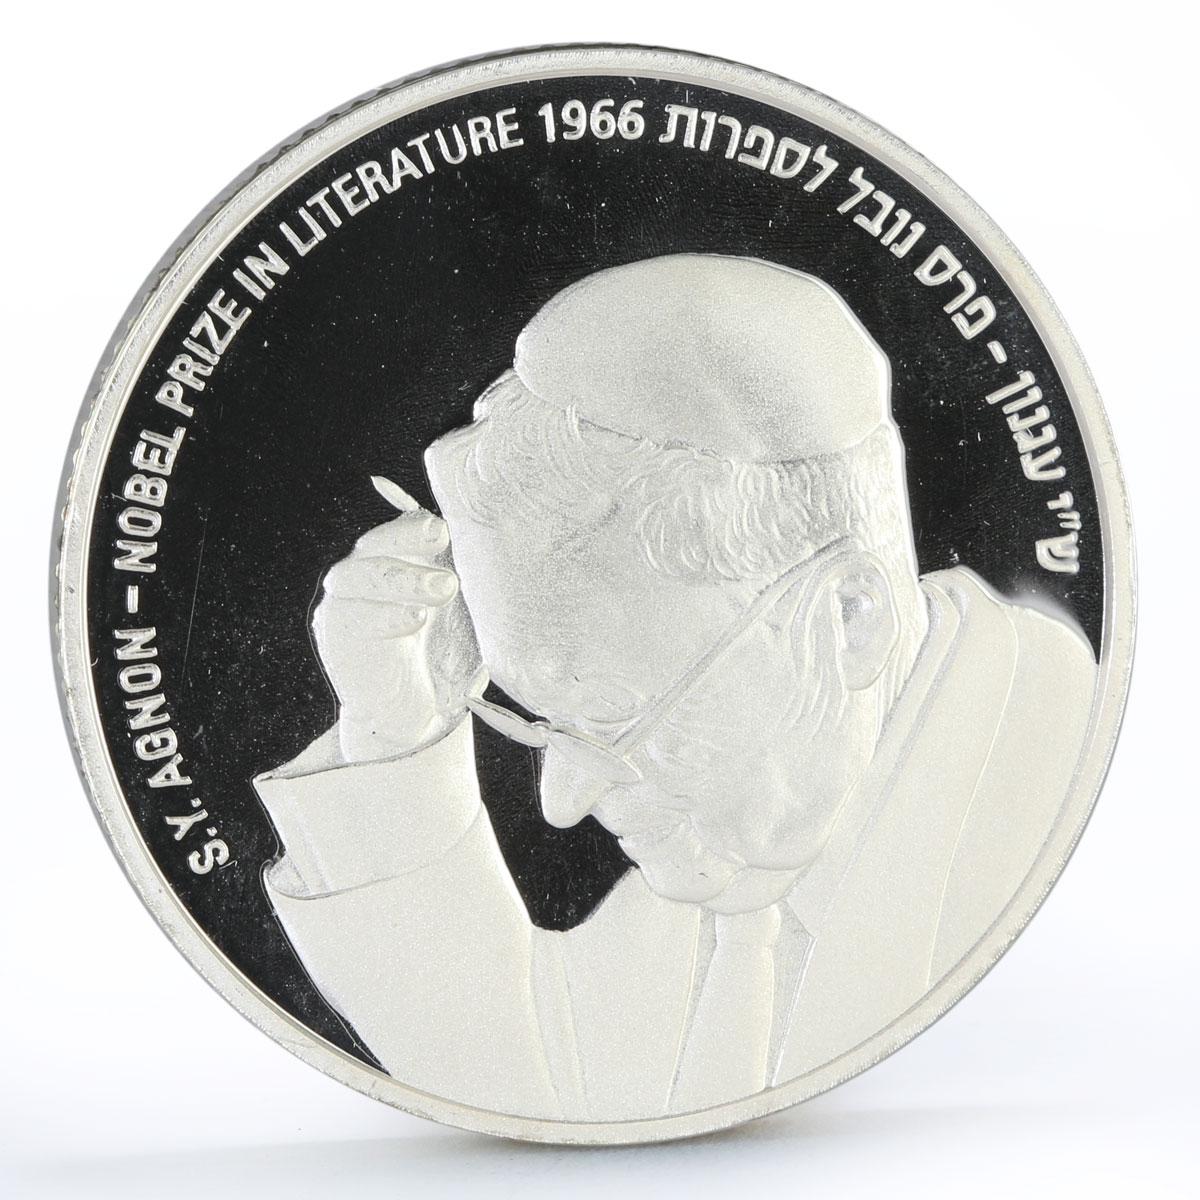 Israel 2 sheqalim Writer Shmuel Agnon Nobel Prize in Literature silver coin 2008